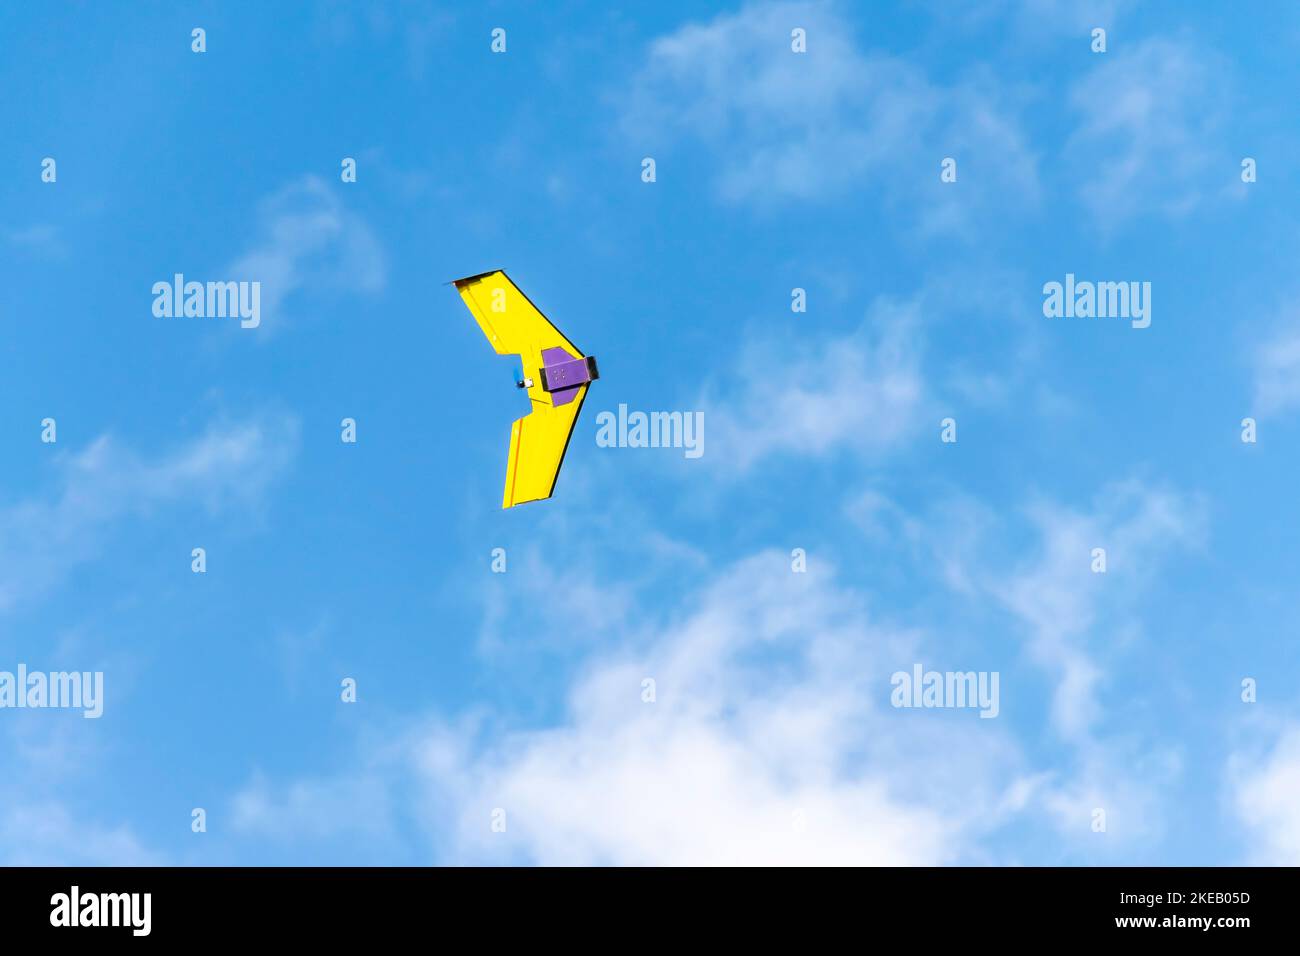 Aviones teledirigidos UAV volando con una hélice, de color amarillo y morado. Ángulo bajo con cielo azul nublado en el fondo Foto de stock